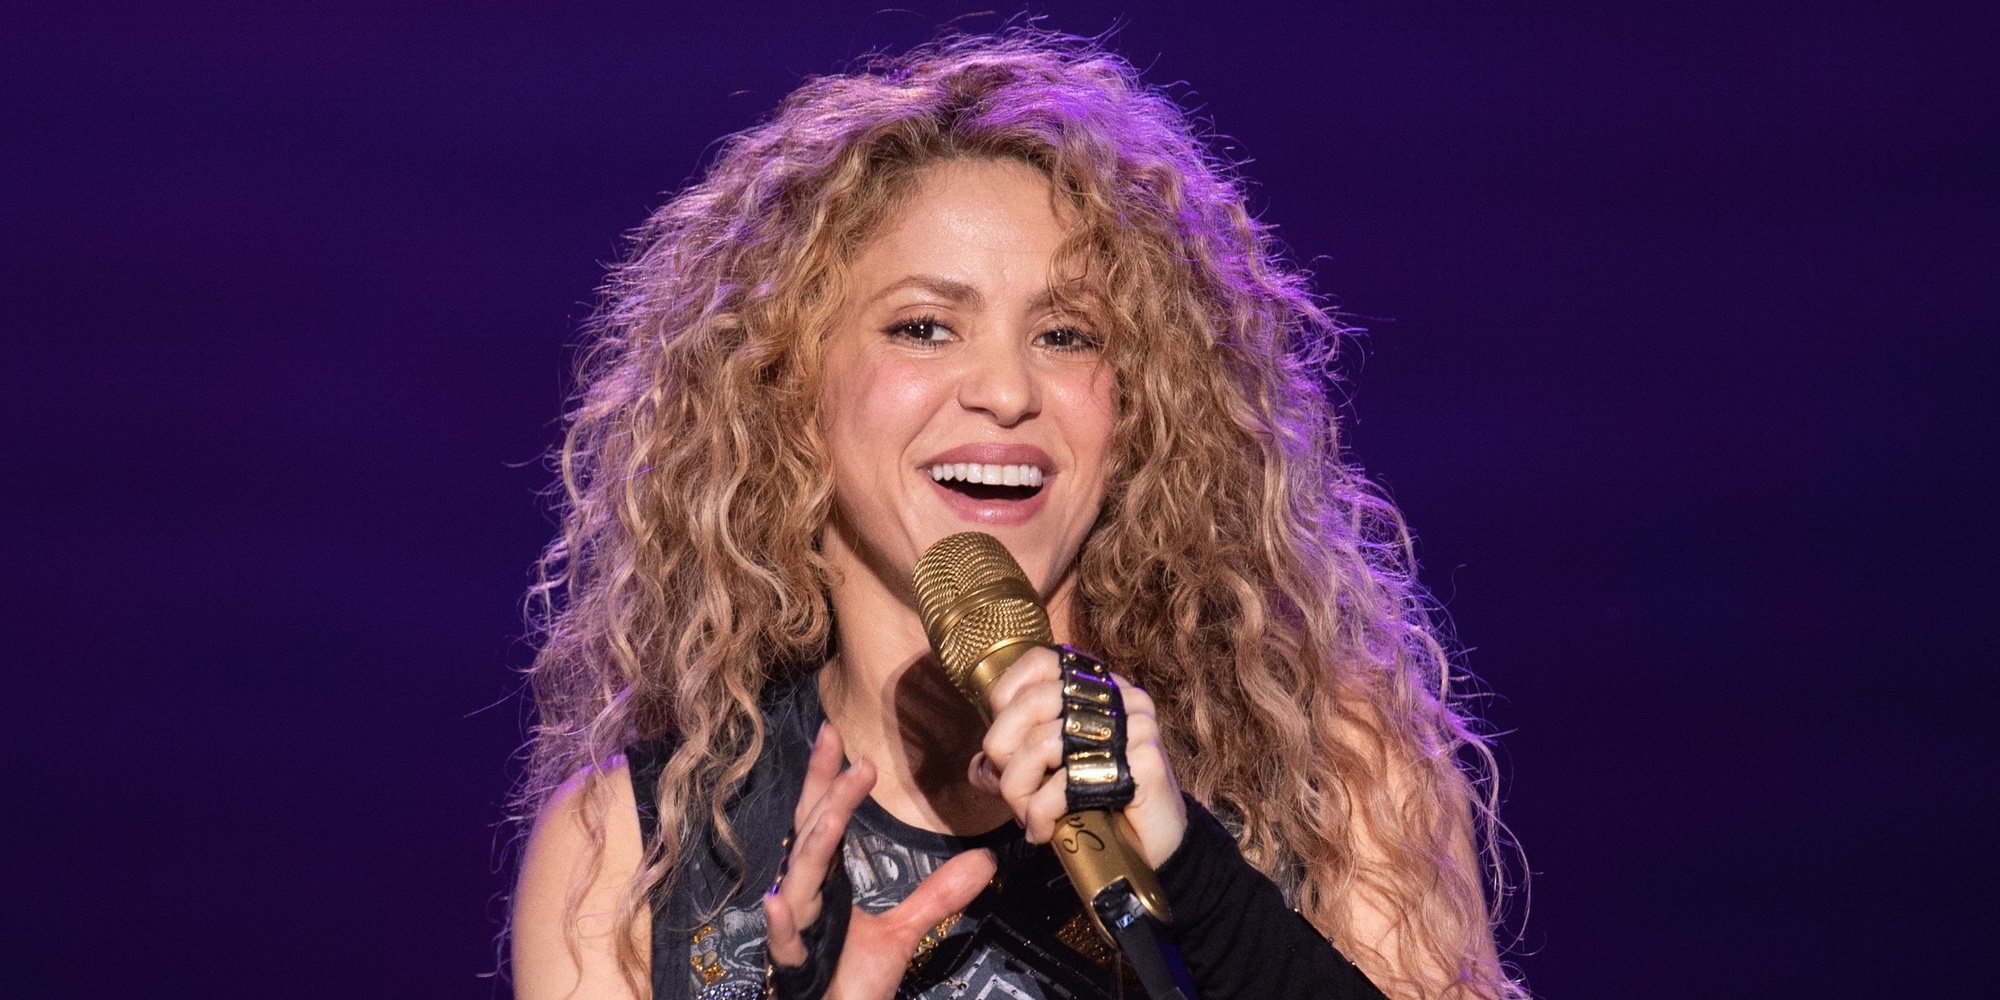 Una milagrosa recuperación: Esto es lo que le prometió Shakira a Dios si volvía a cantar